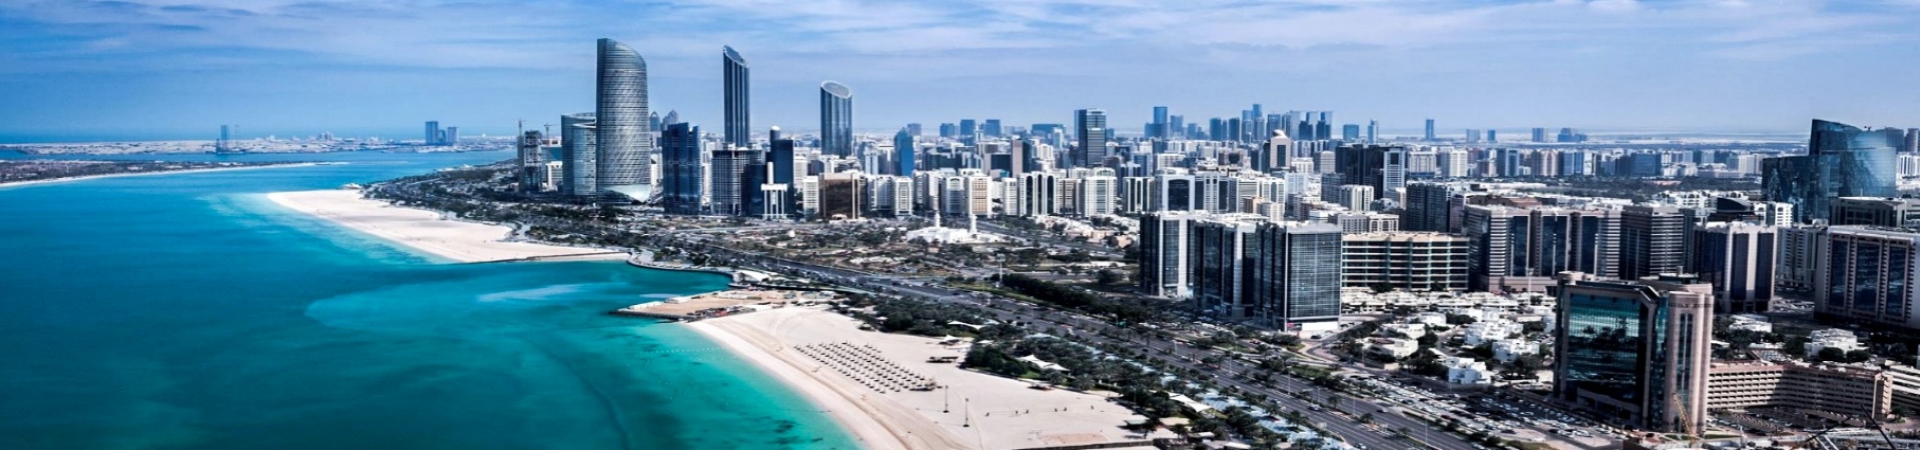 Sejur Abu Dhabi & Dubai 2021